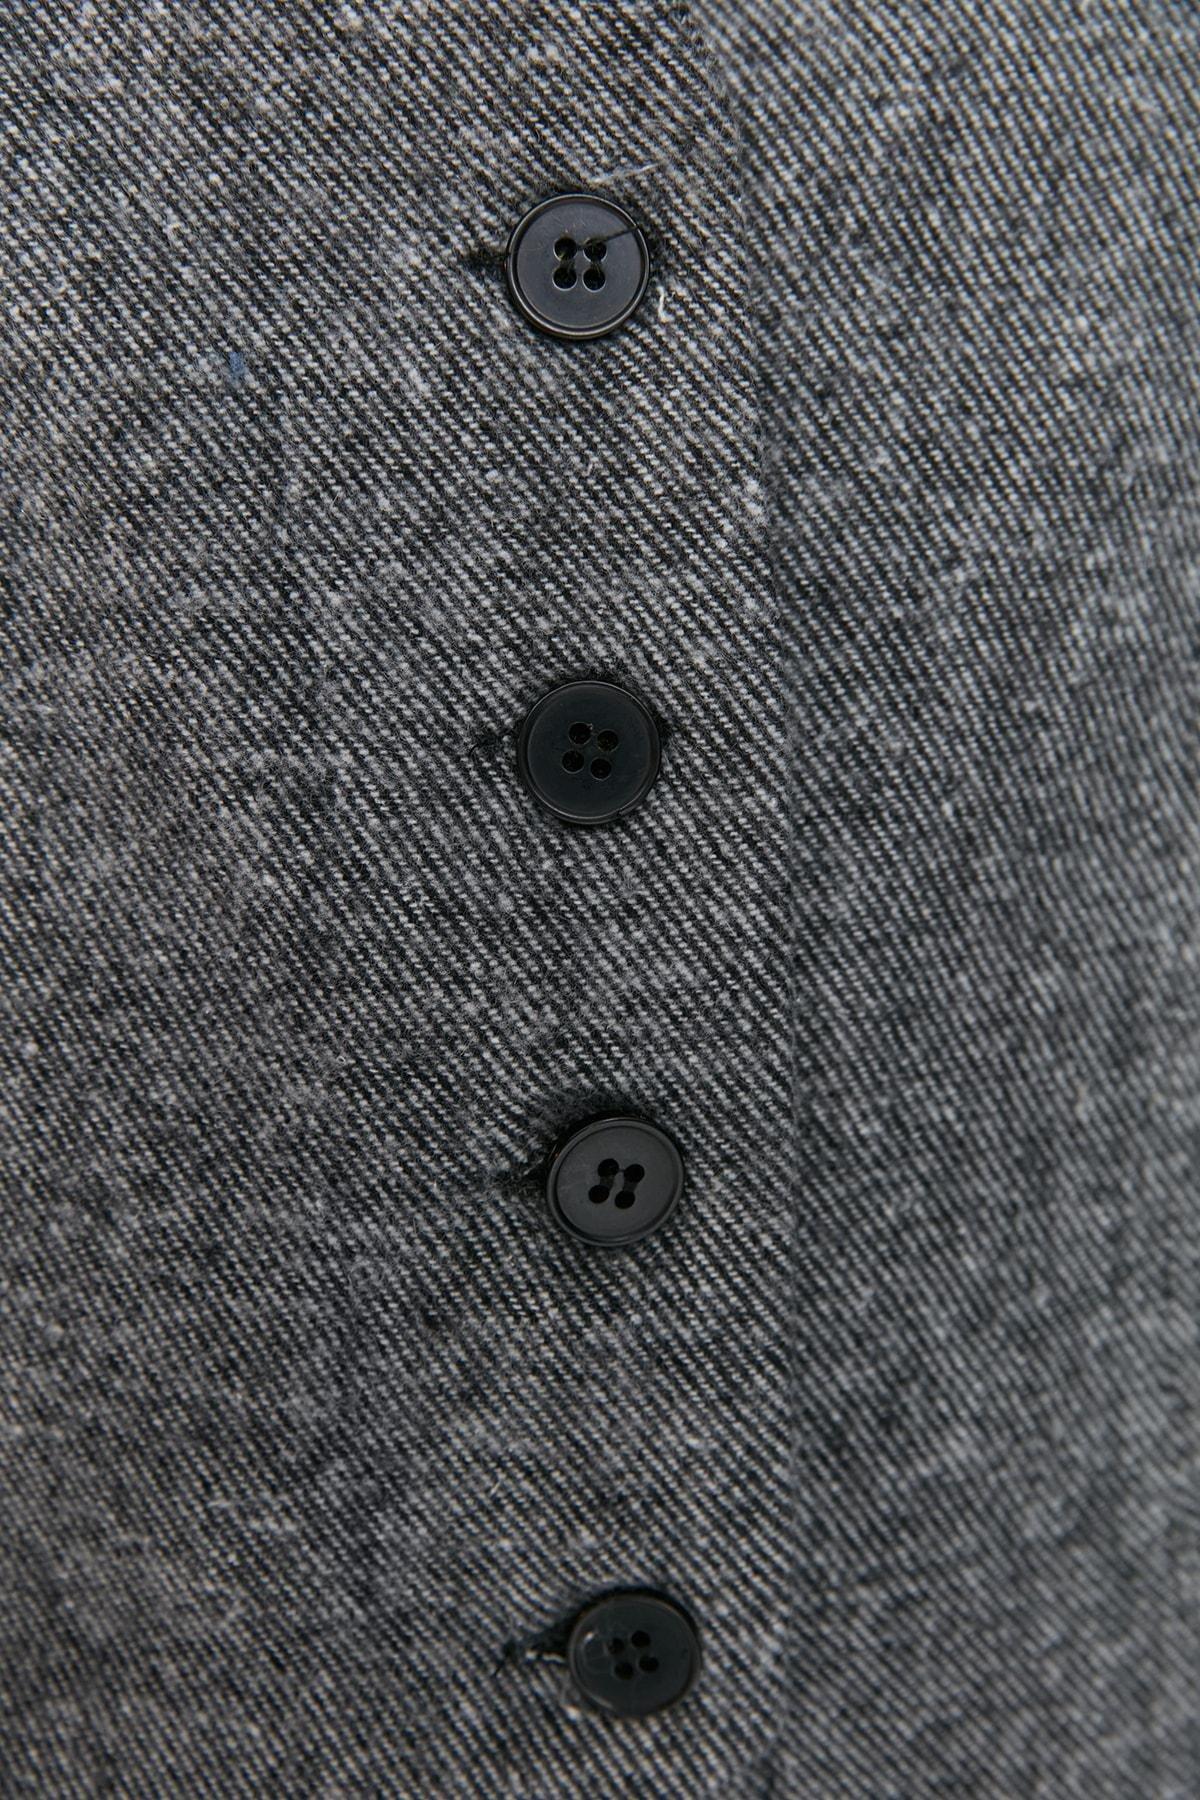 Trendyol - Grey V-Neck Vest